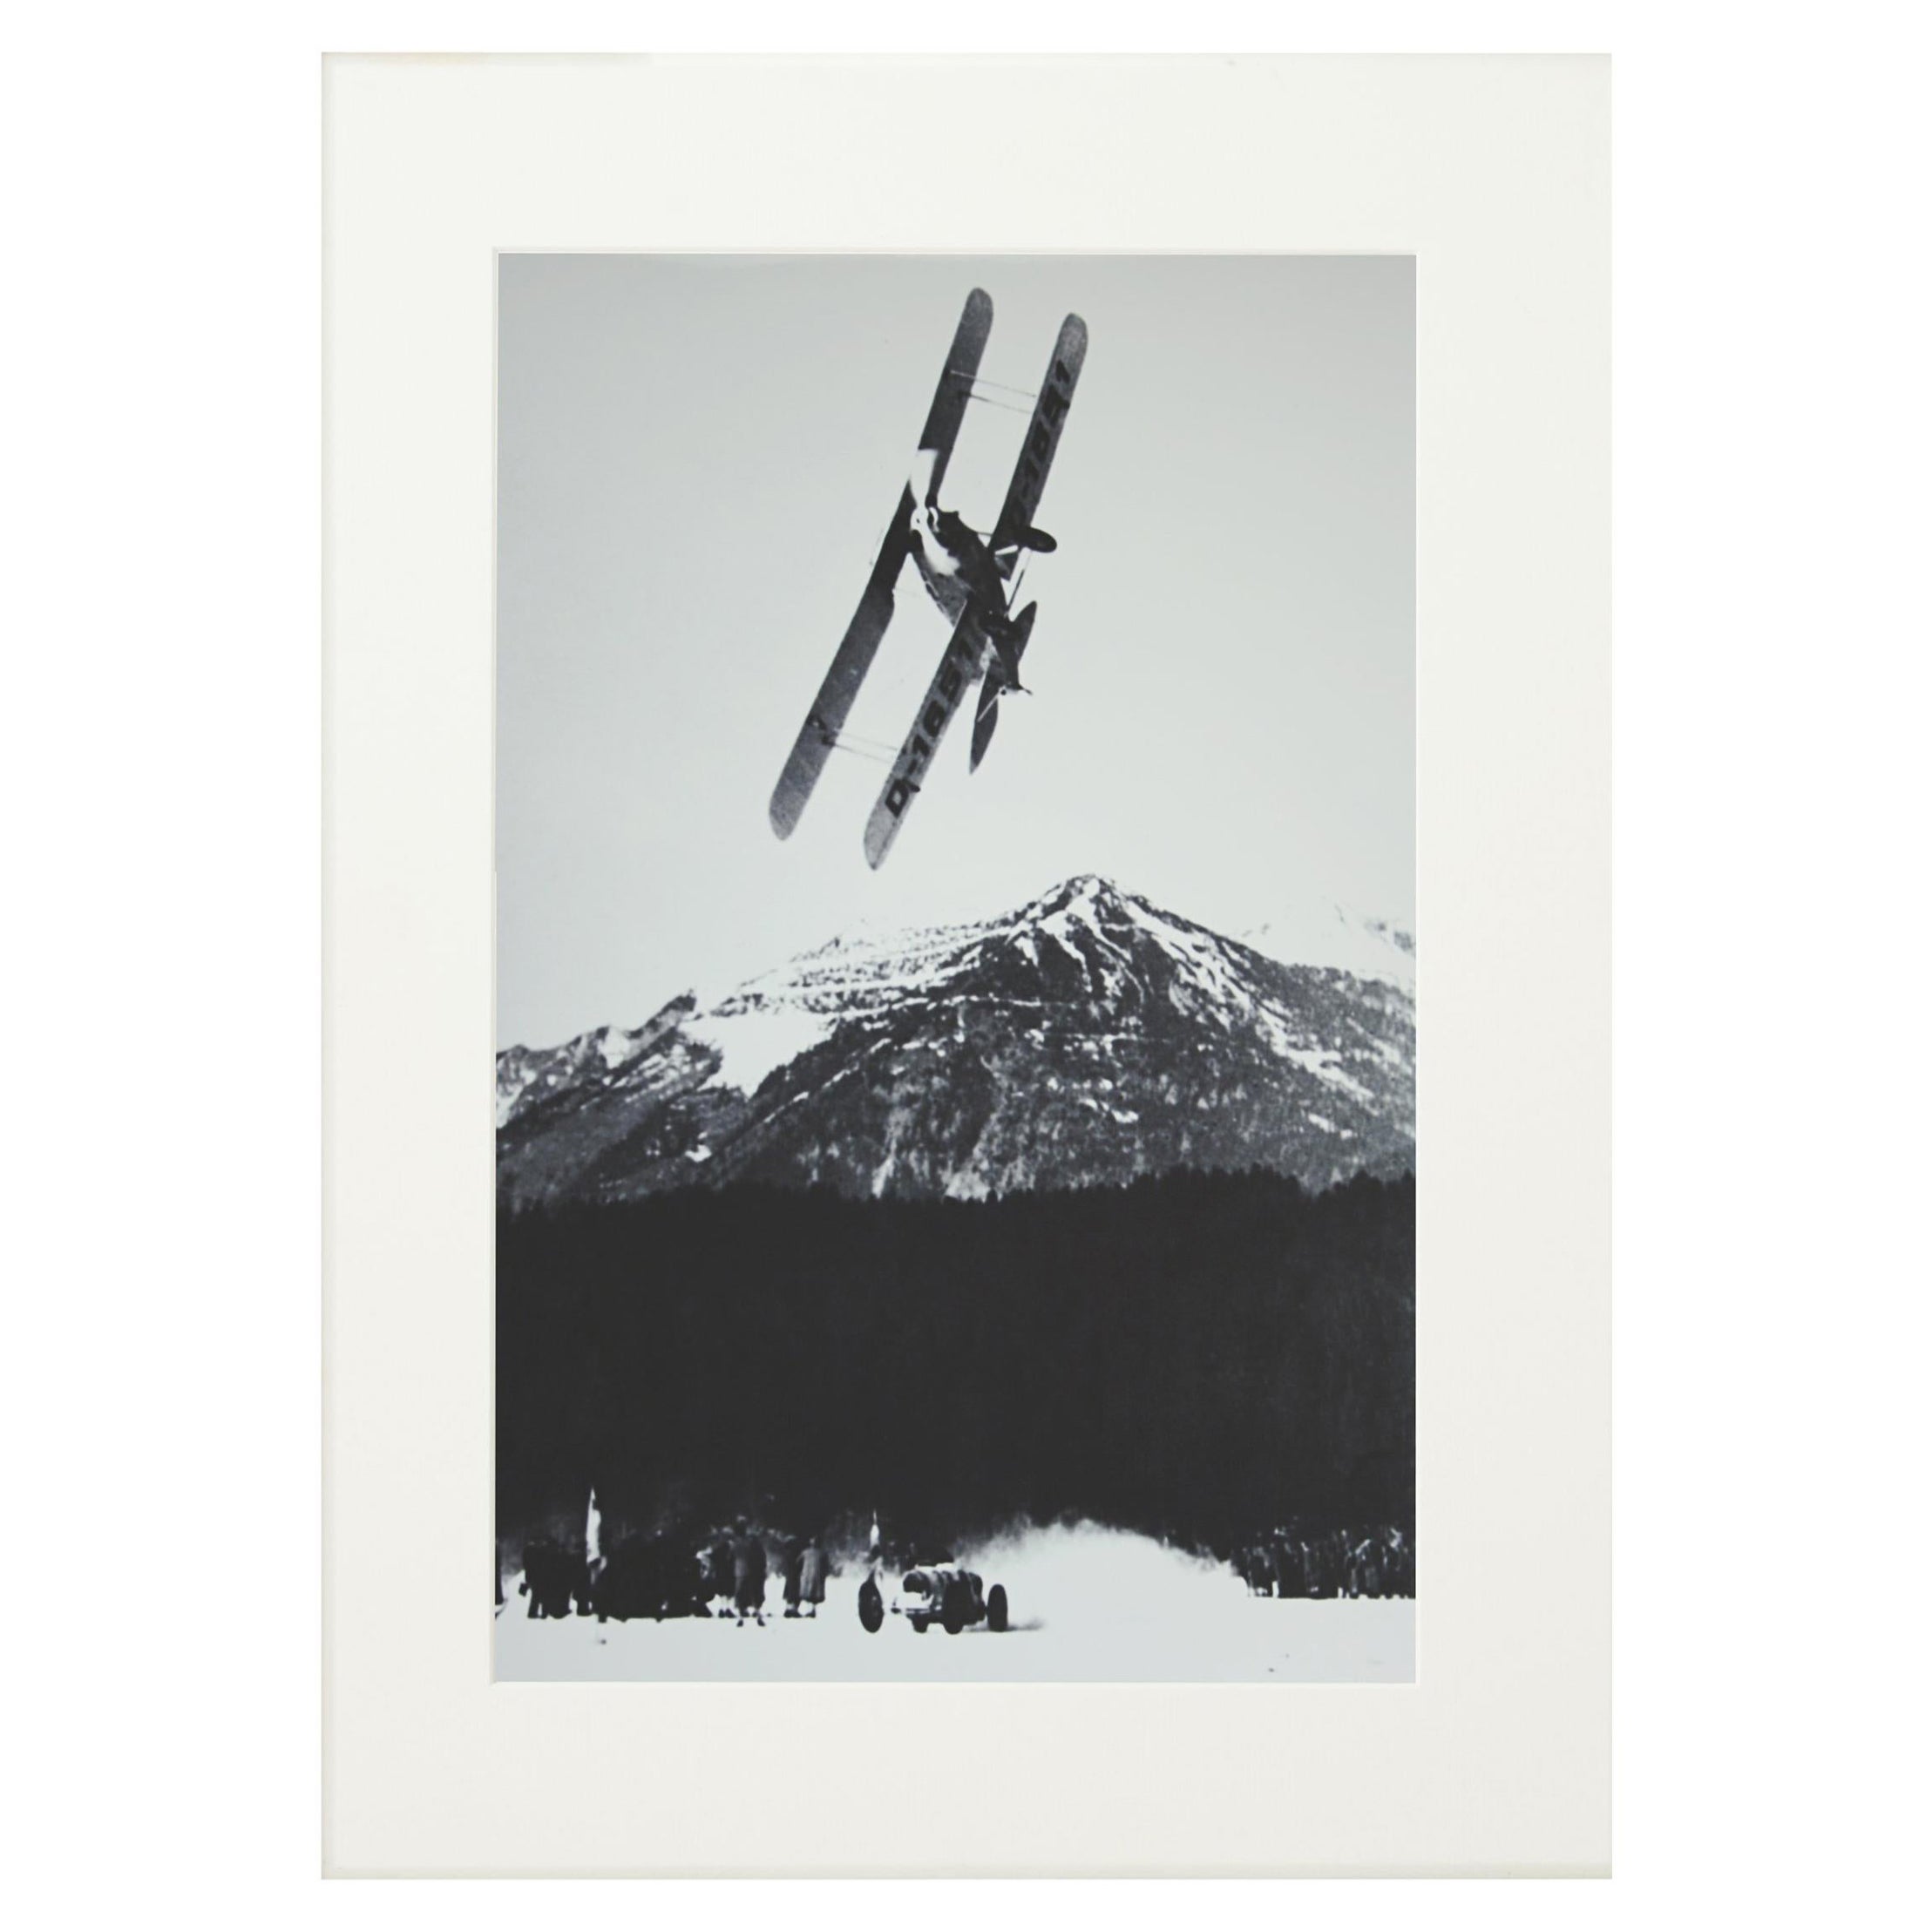 Alpinskifotografie, „Das Rennen“, aufgenommen aus einer Originalfotografie aus den 1930er Jahren